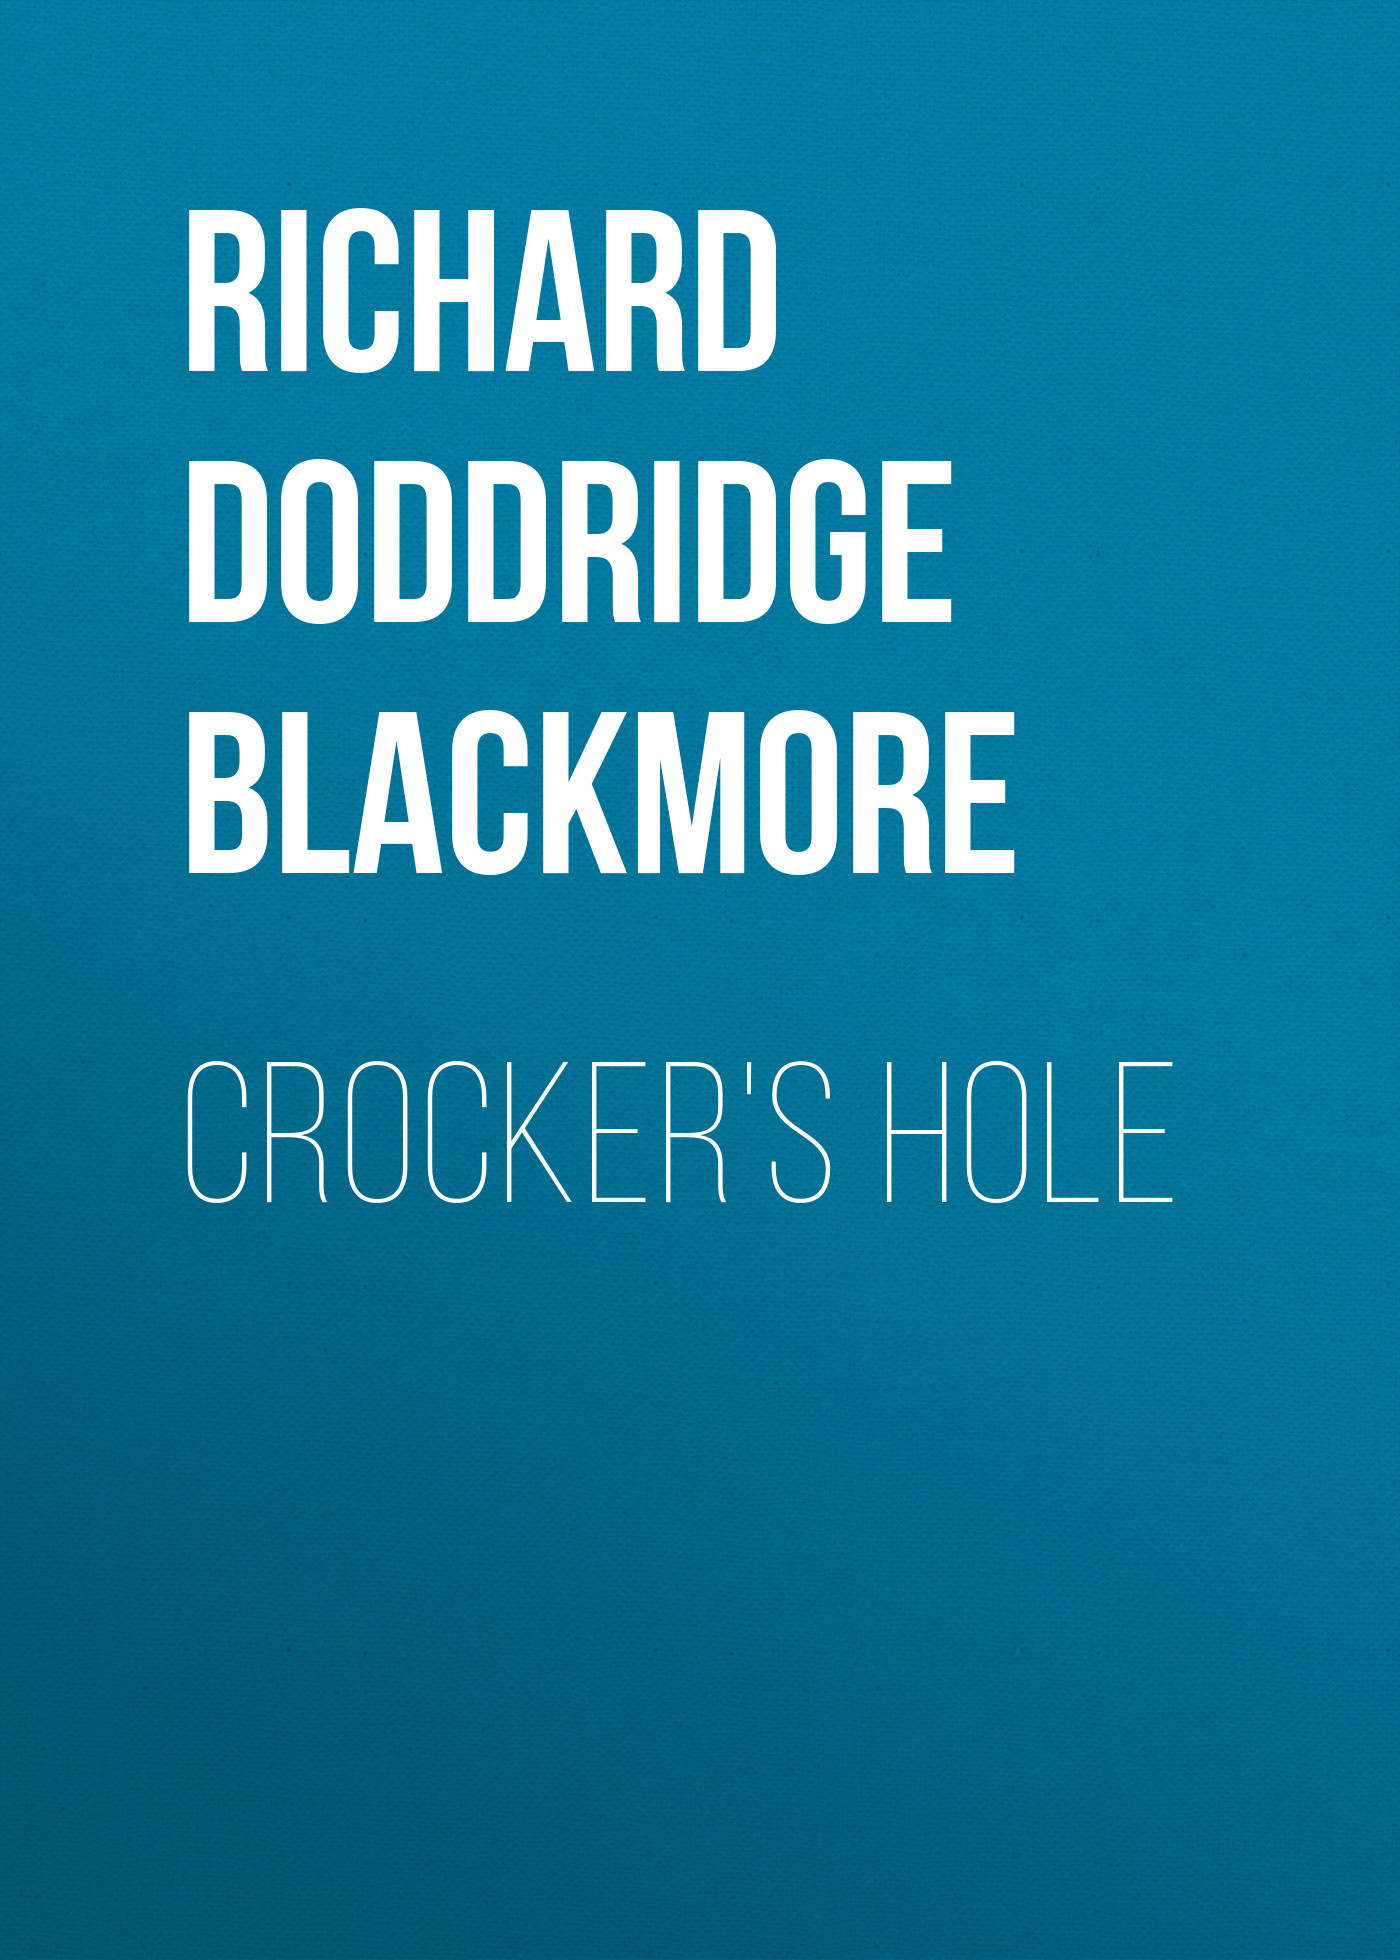 Книга Crocker's Hole из серии , созданная Richard Doddridge Blackmore, может относится к жанру Зарубежная классика, Литература 19 века, Зарубежная старинная литература. Стоимость электронной книги Crocker's Hole с идентификатором 36096677 составляет 0 руб.